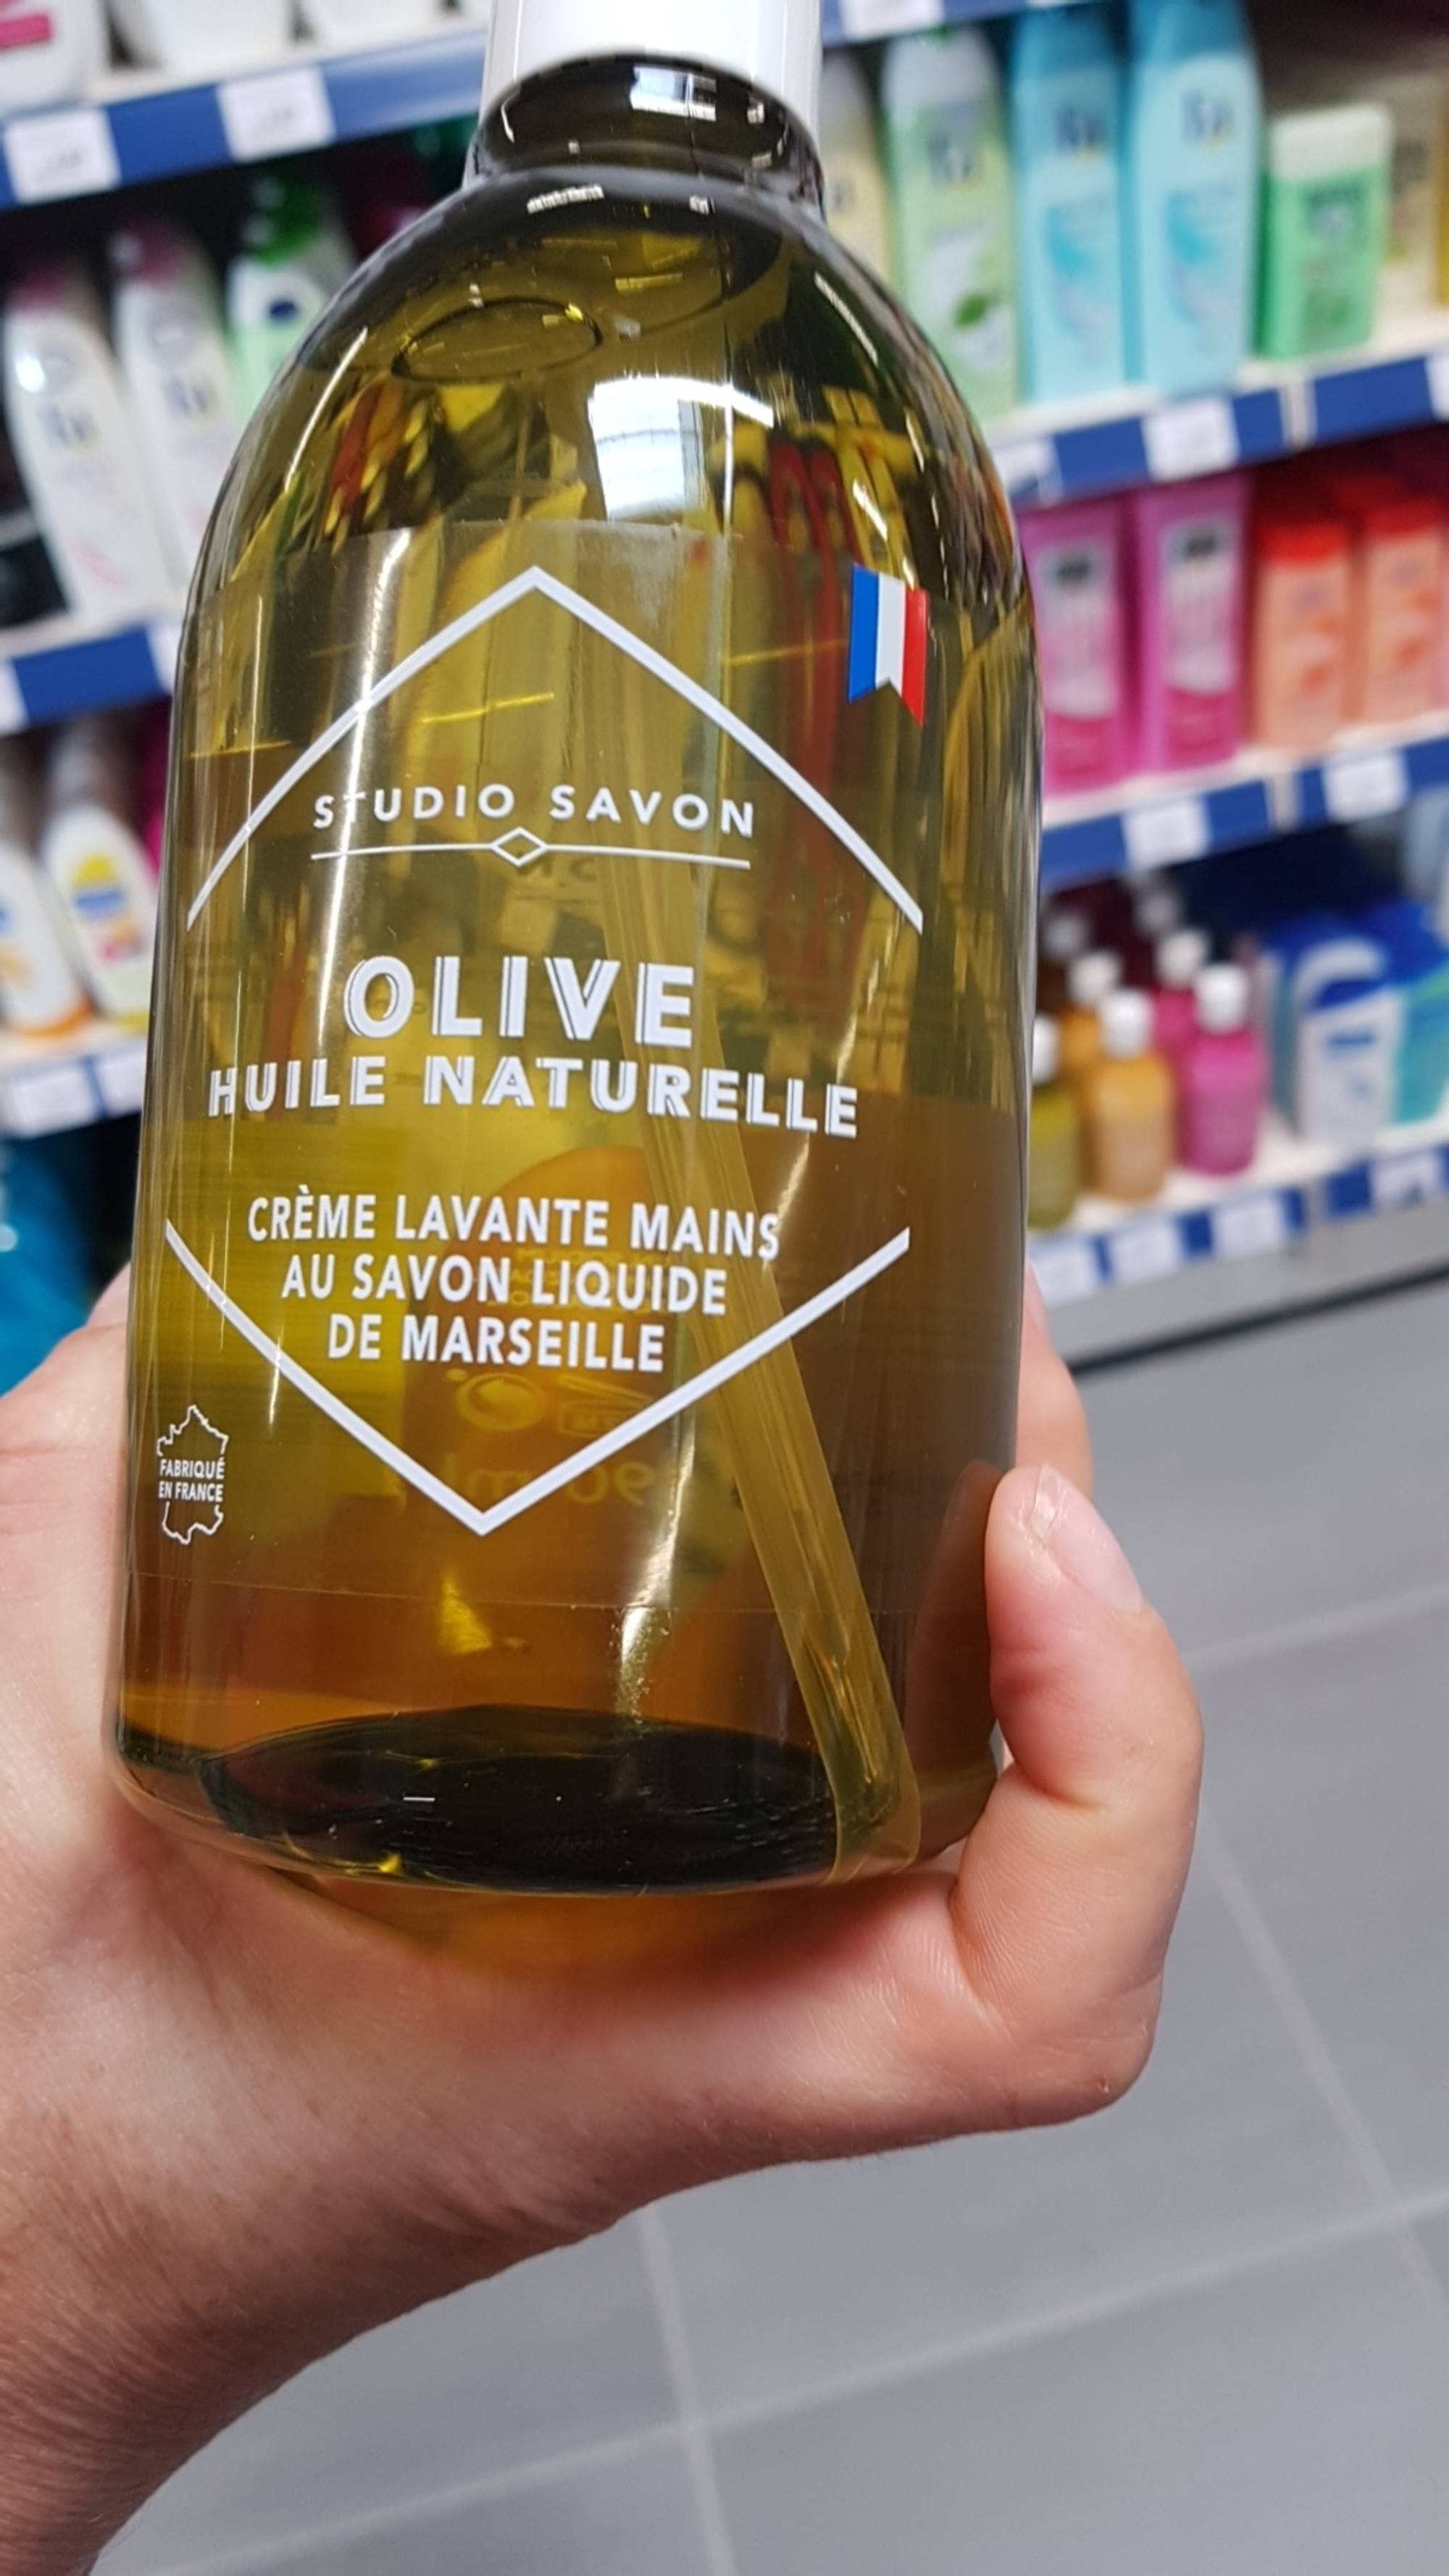 STUDIO SAVON - Olive huile naturelle - Crème lavante mains au savon liquide de Marseille